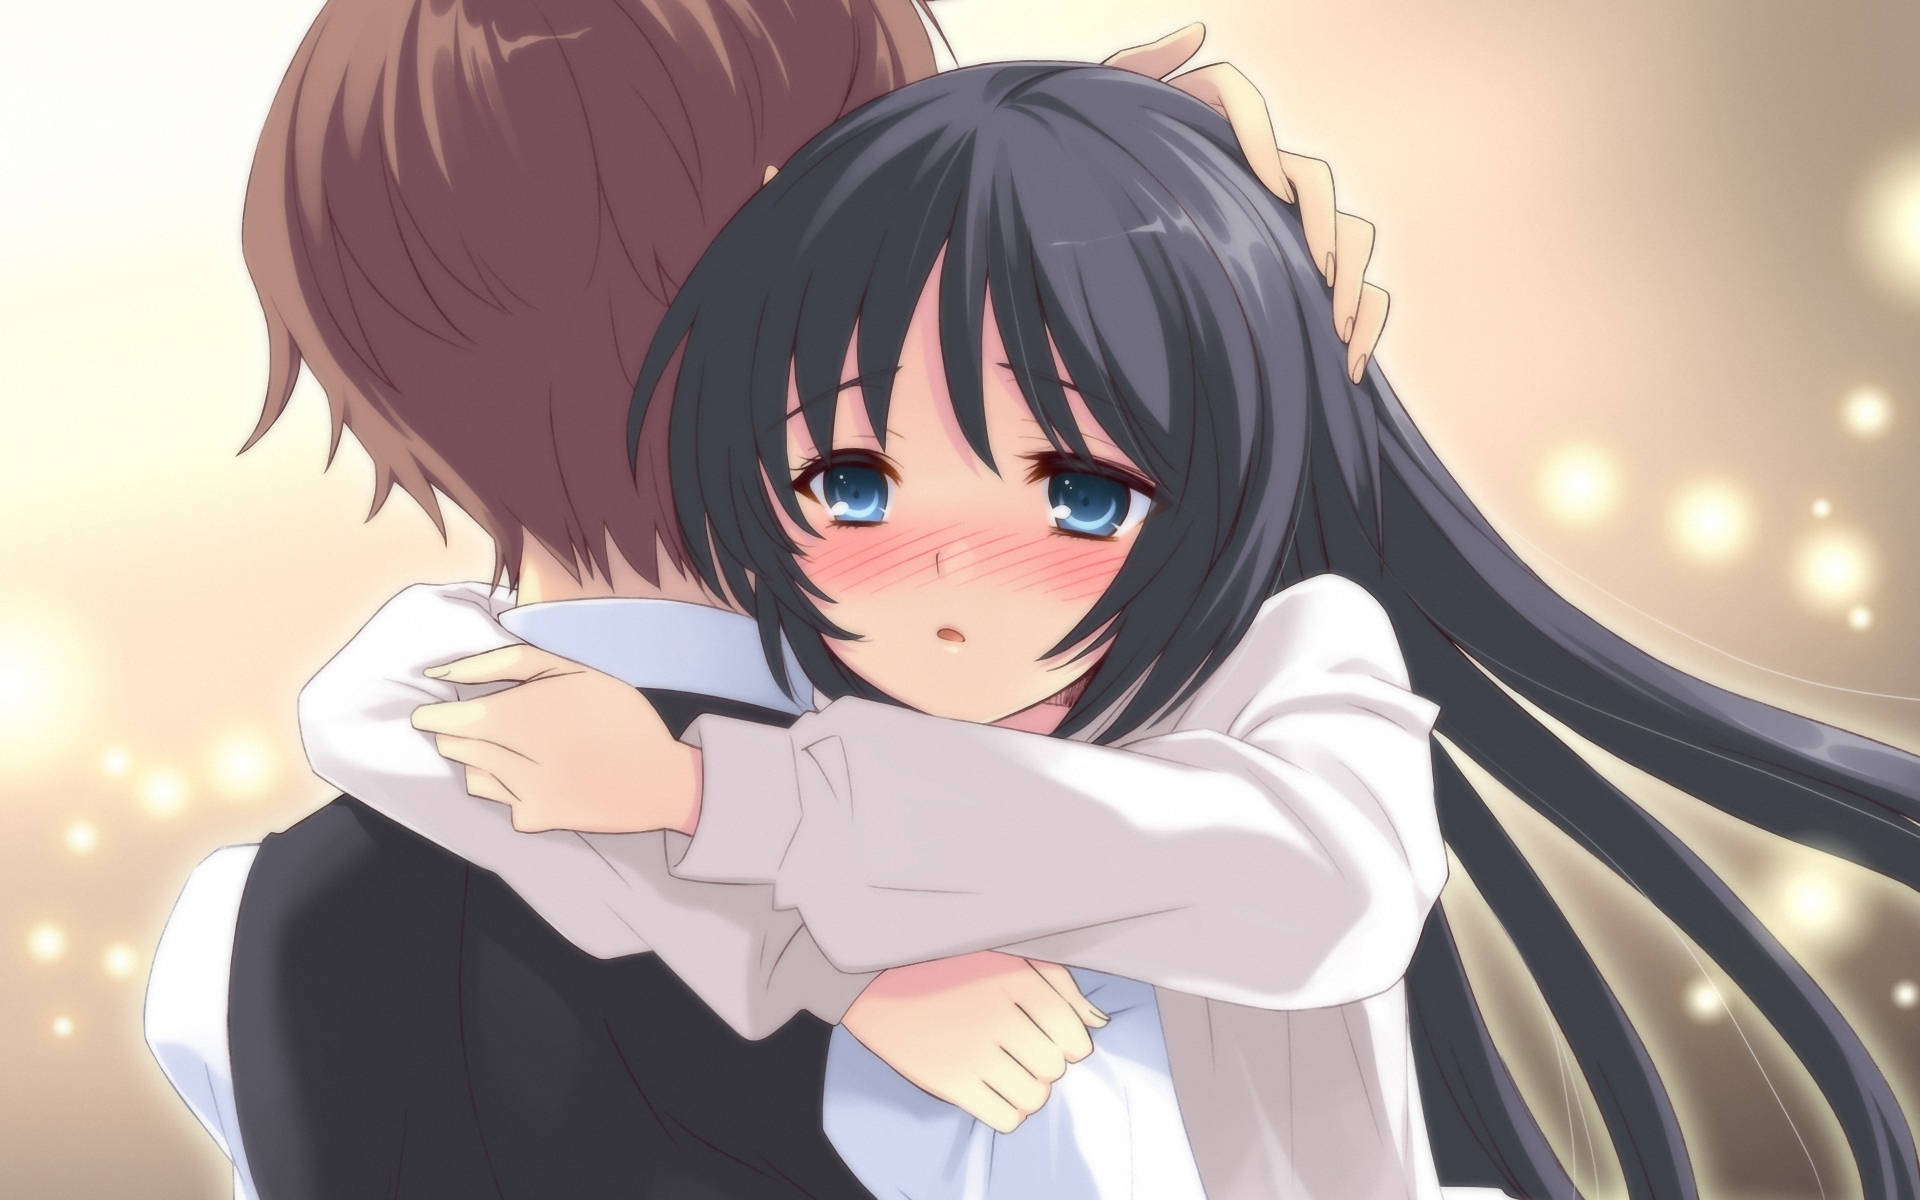 Anime Hug Of Pair